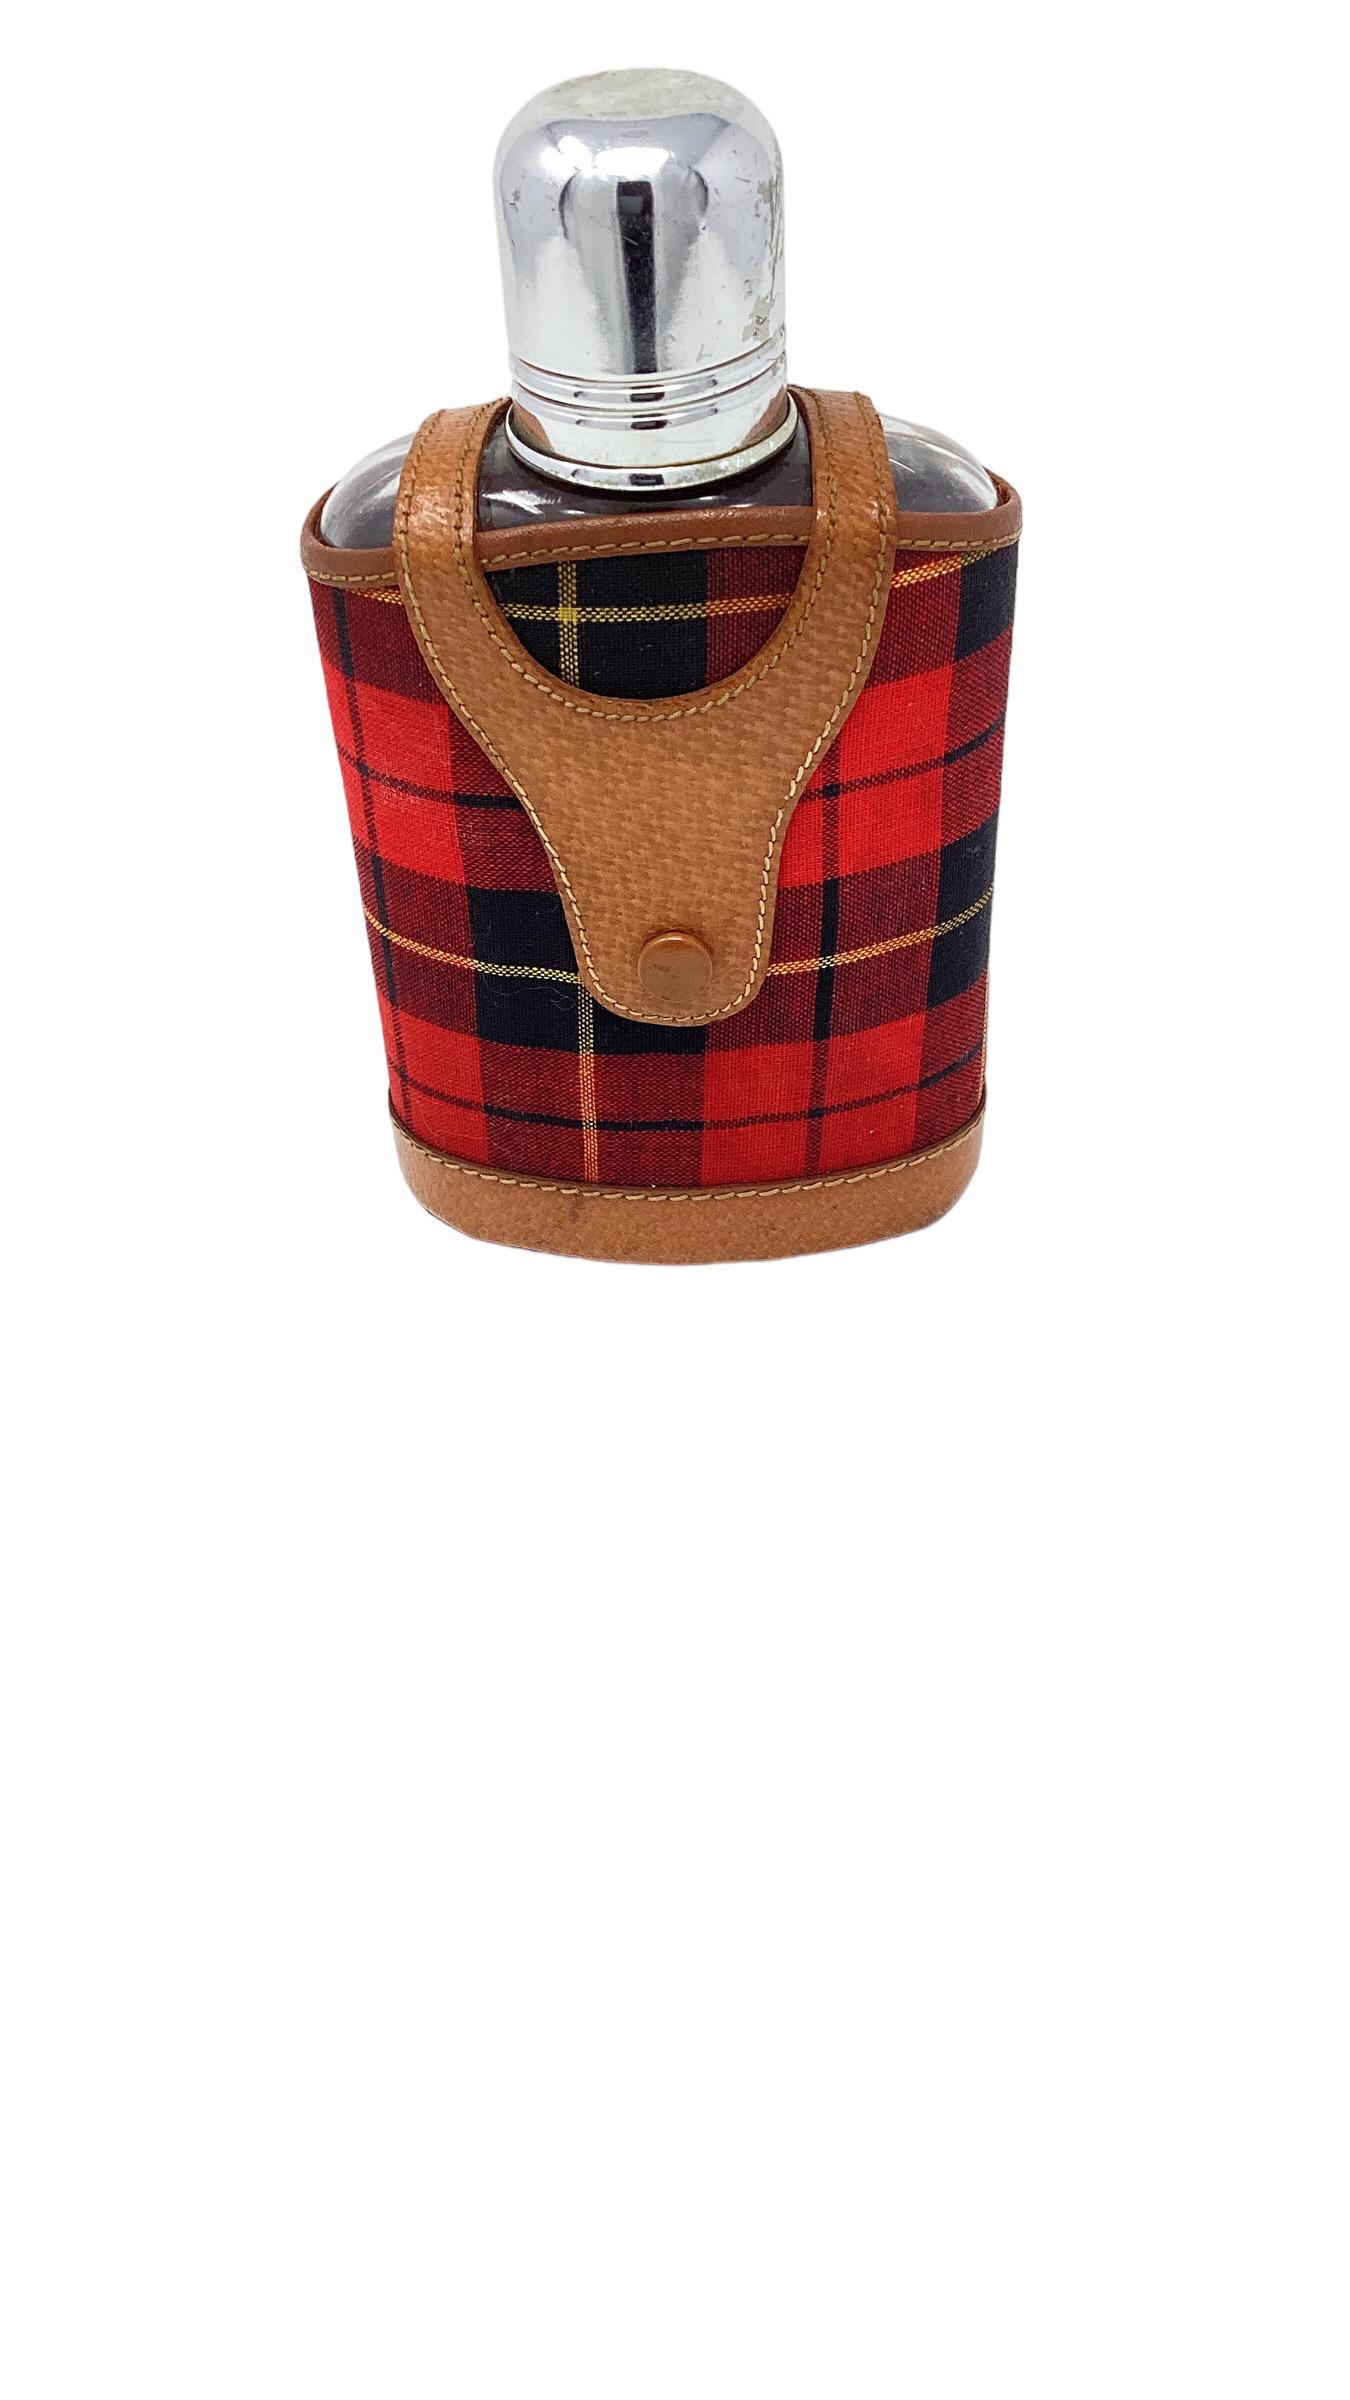 Flasque vintage avec couvercle en cuir et en tissu écossais. Un écossais aux couleurs vives et du cuir de porc souple cousu à la main entourent la gourde en verre.